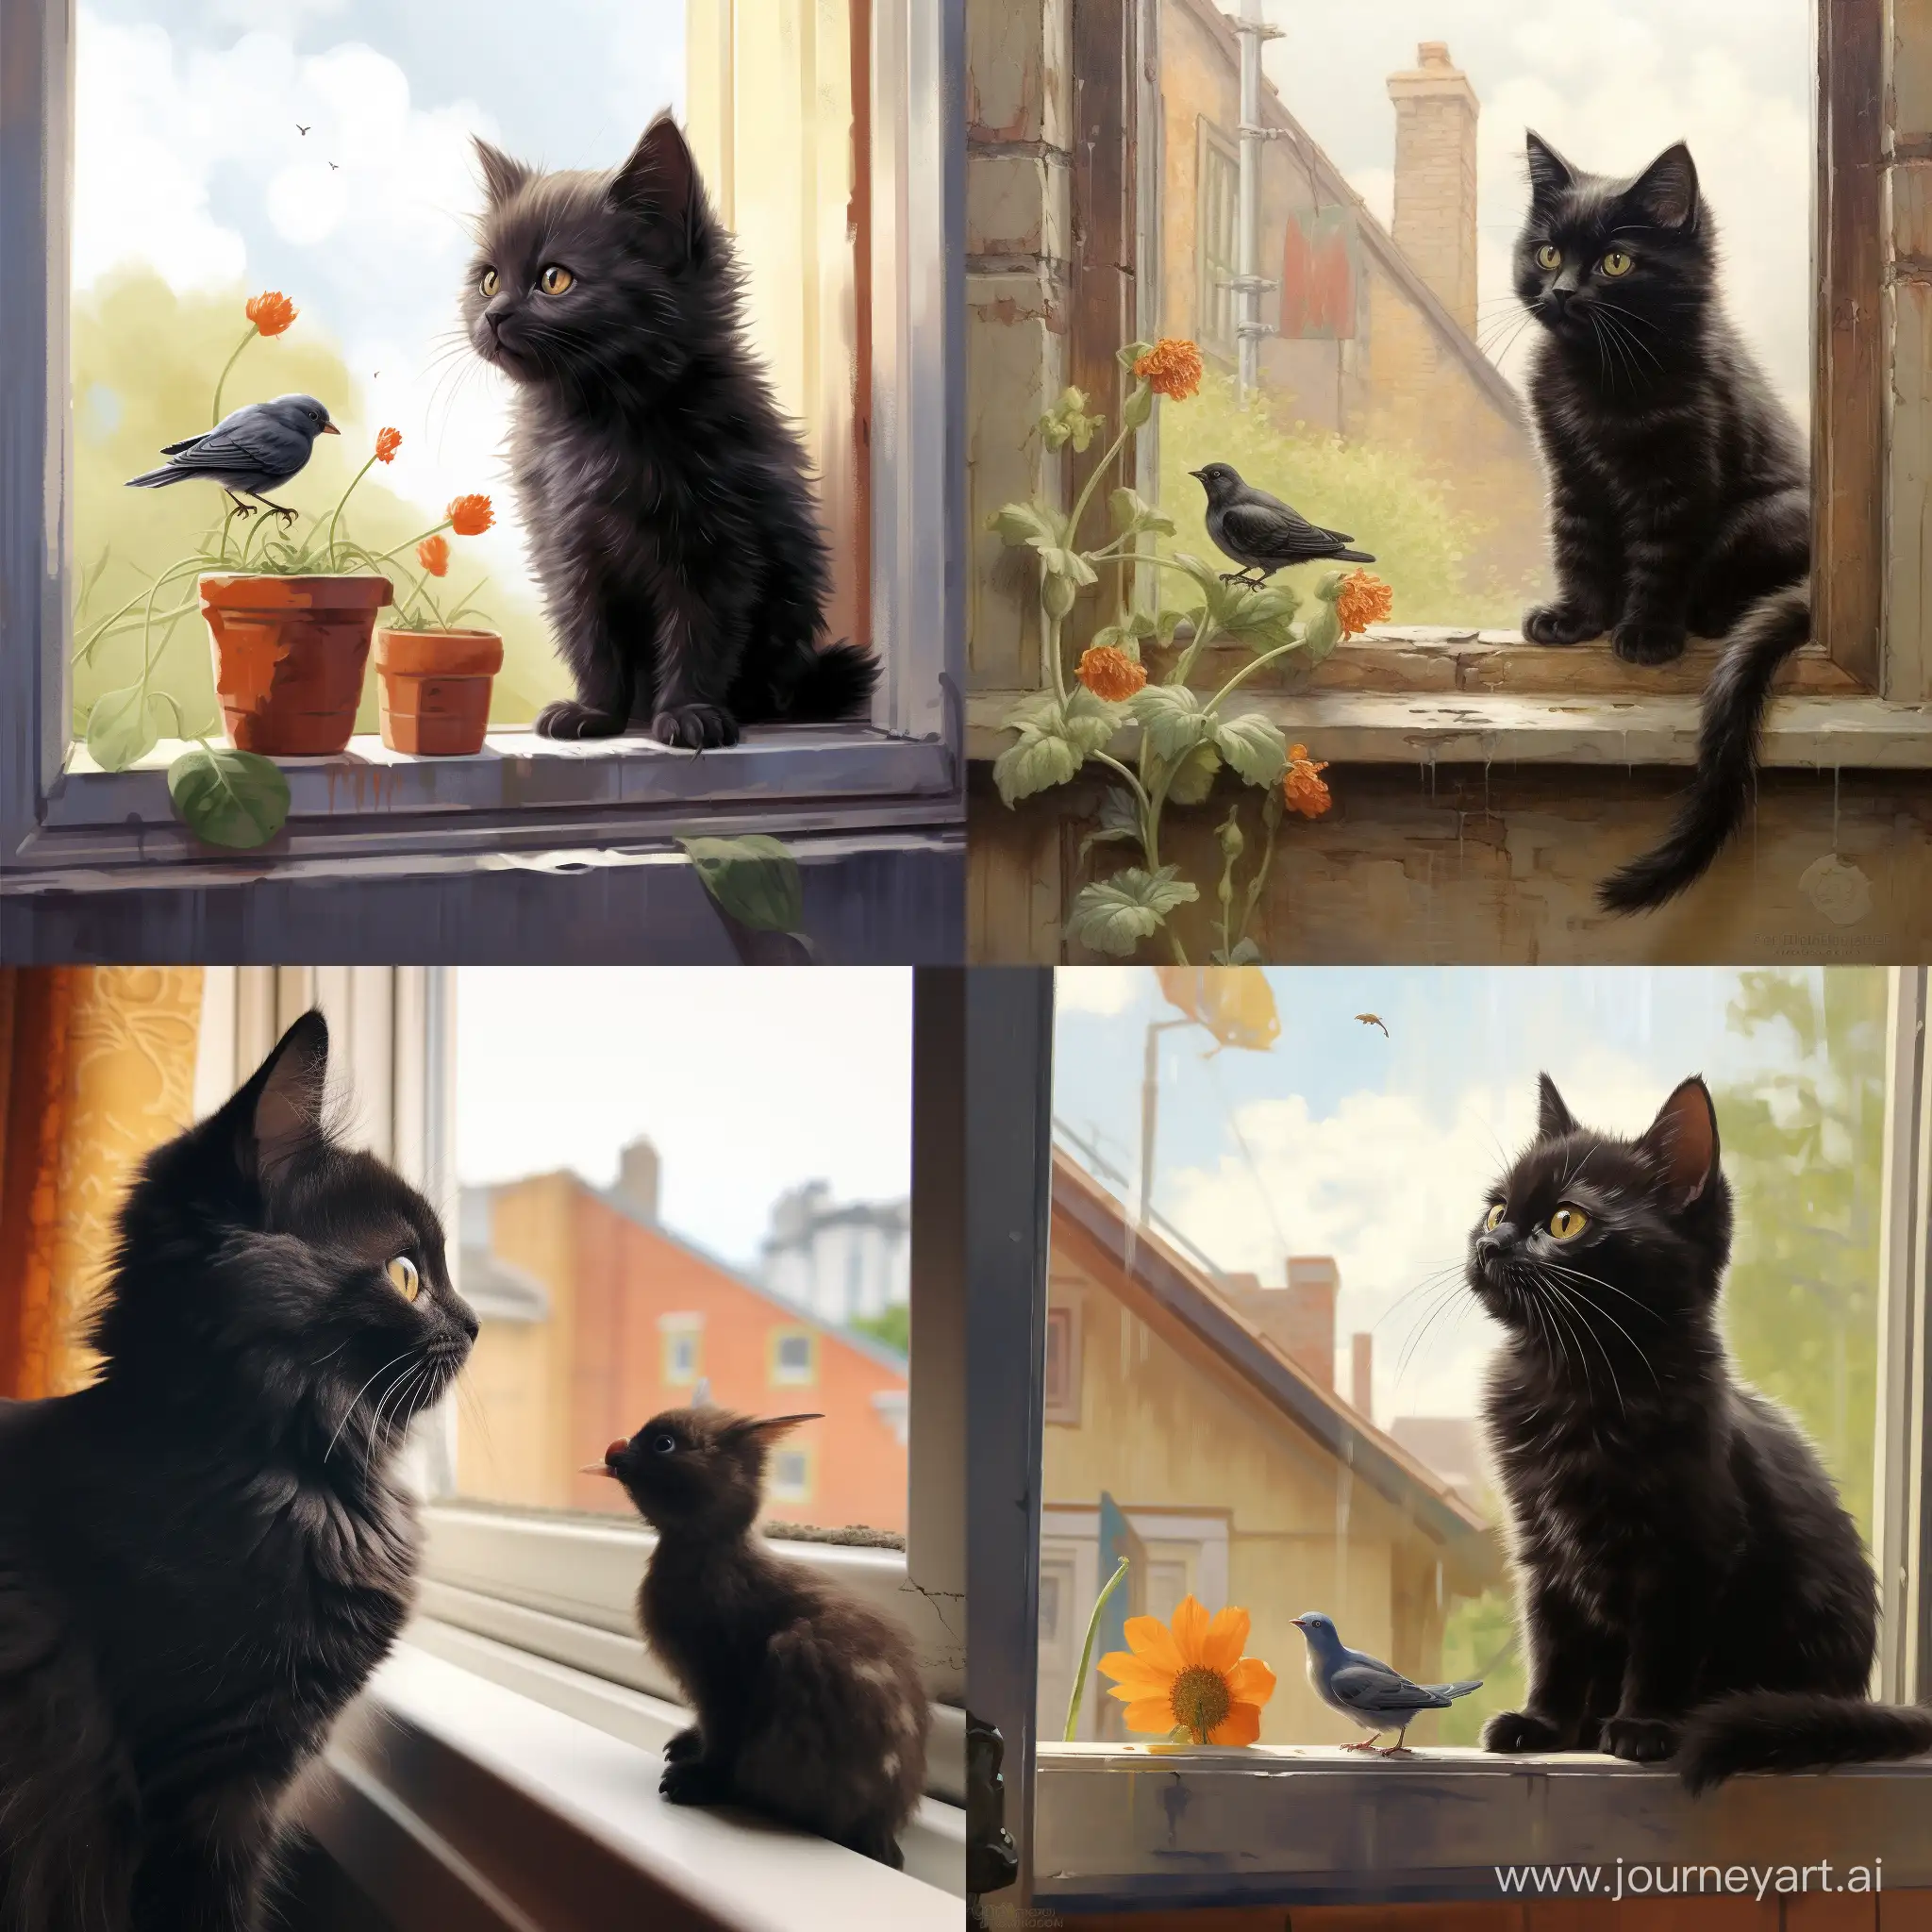 Joyful-Black-Kitten-Observing-a-Crow-from-Windowsill